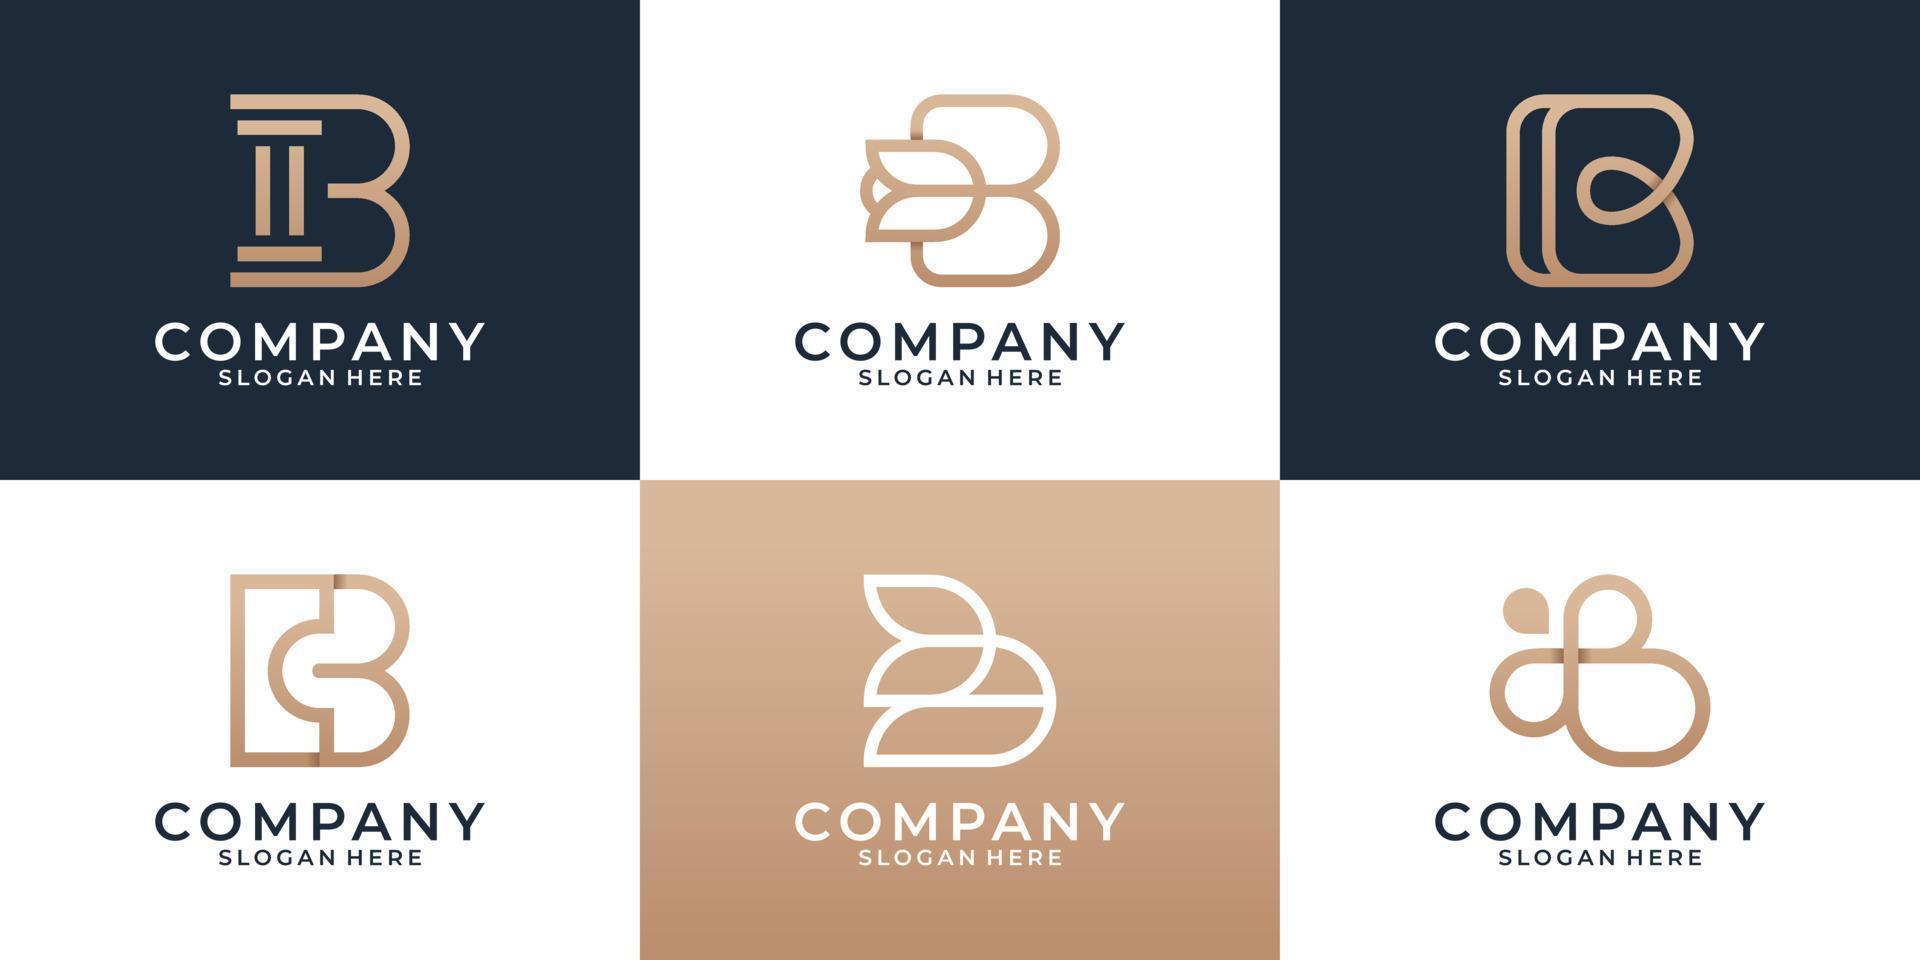 conjunto de varias plantillas de diseño de logotipo b, carta inicial de monograma creativo para negocios, construcción, marketing, belleza y moda. vector